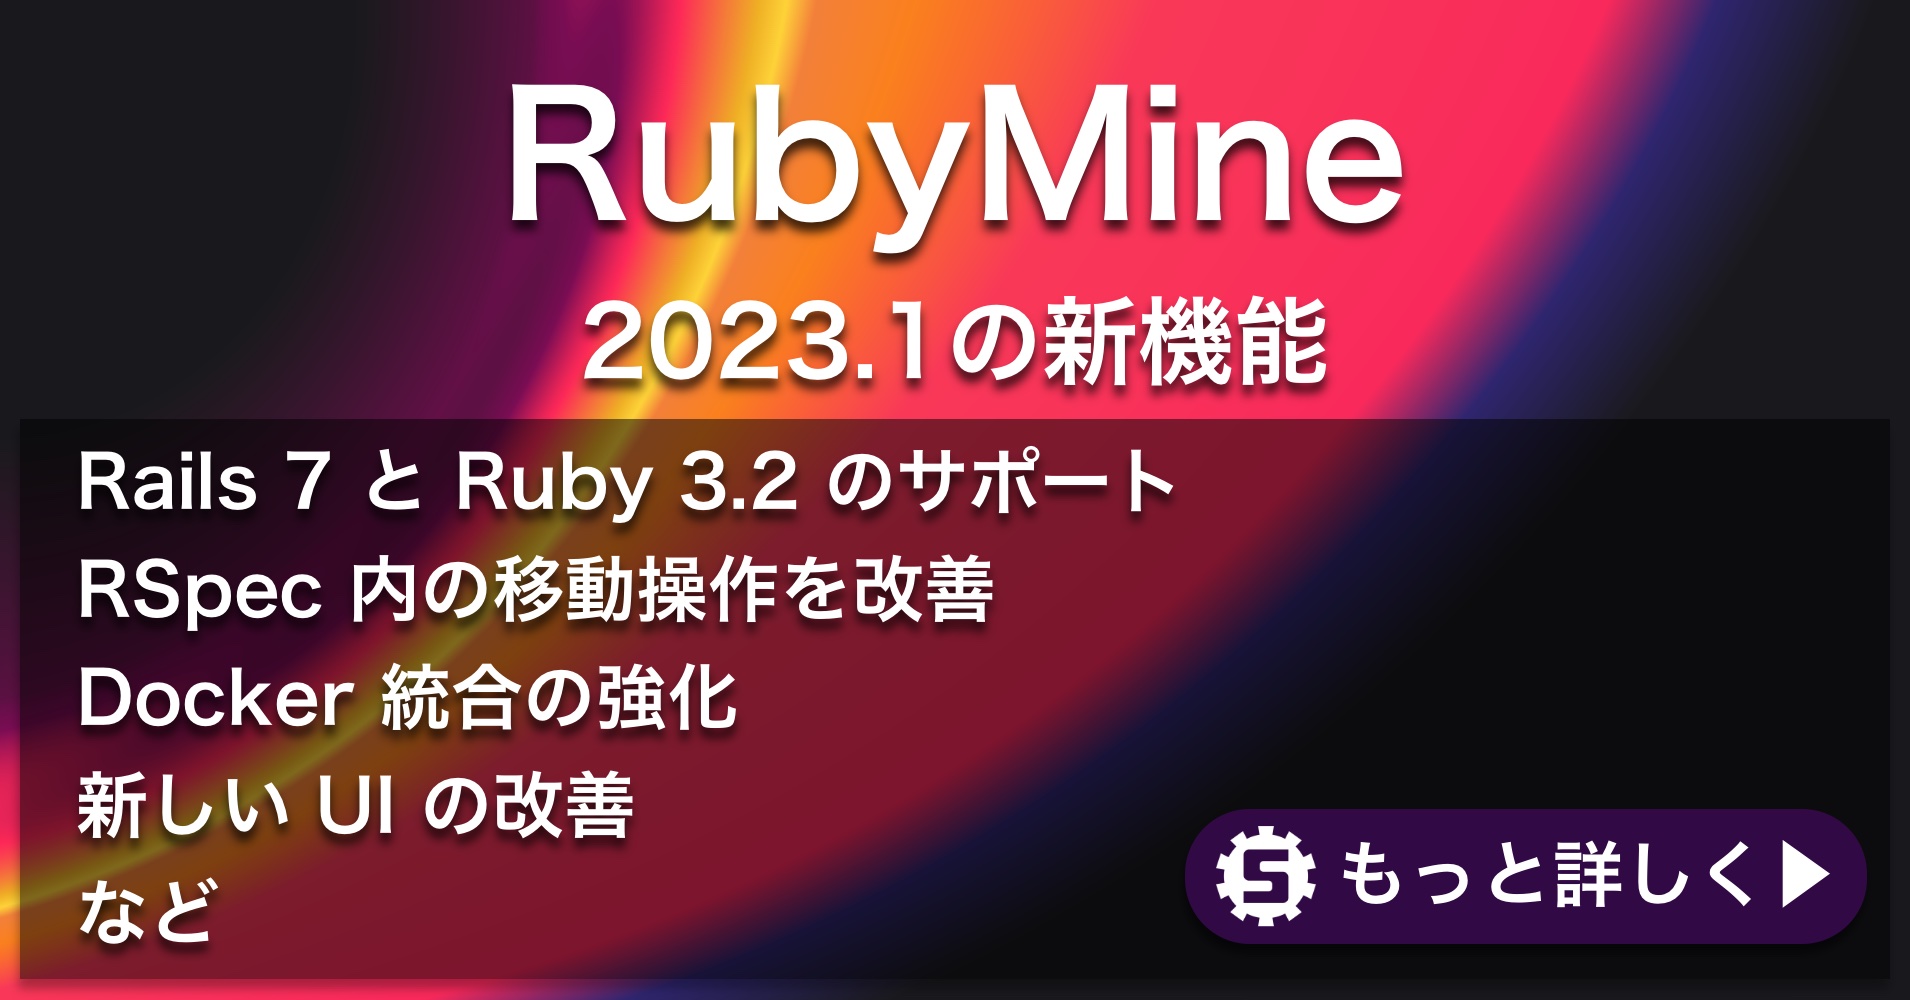 RubyMine 2023.1の新機能